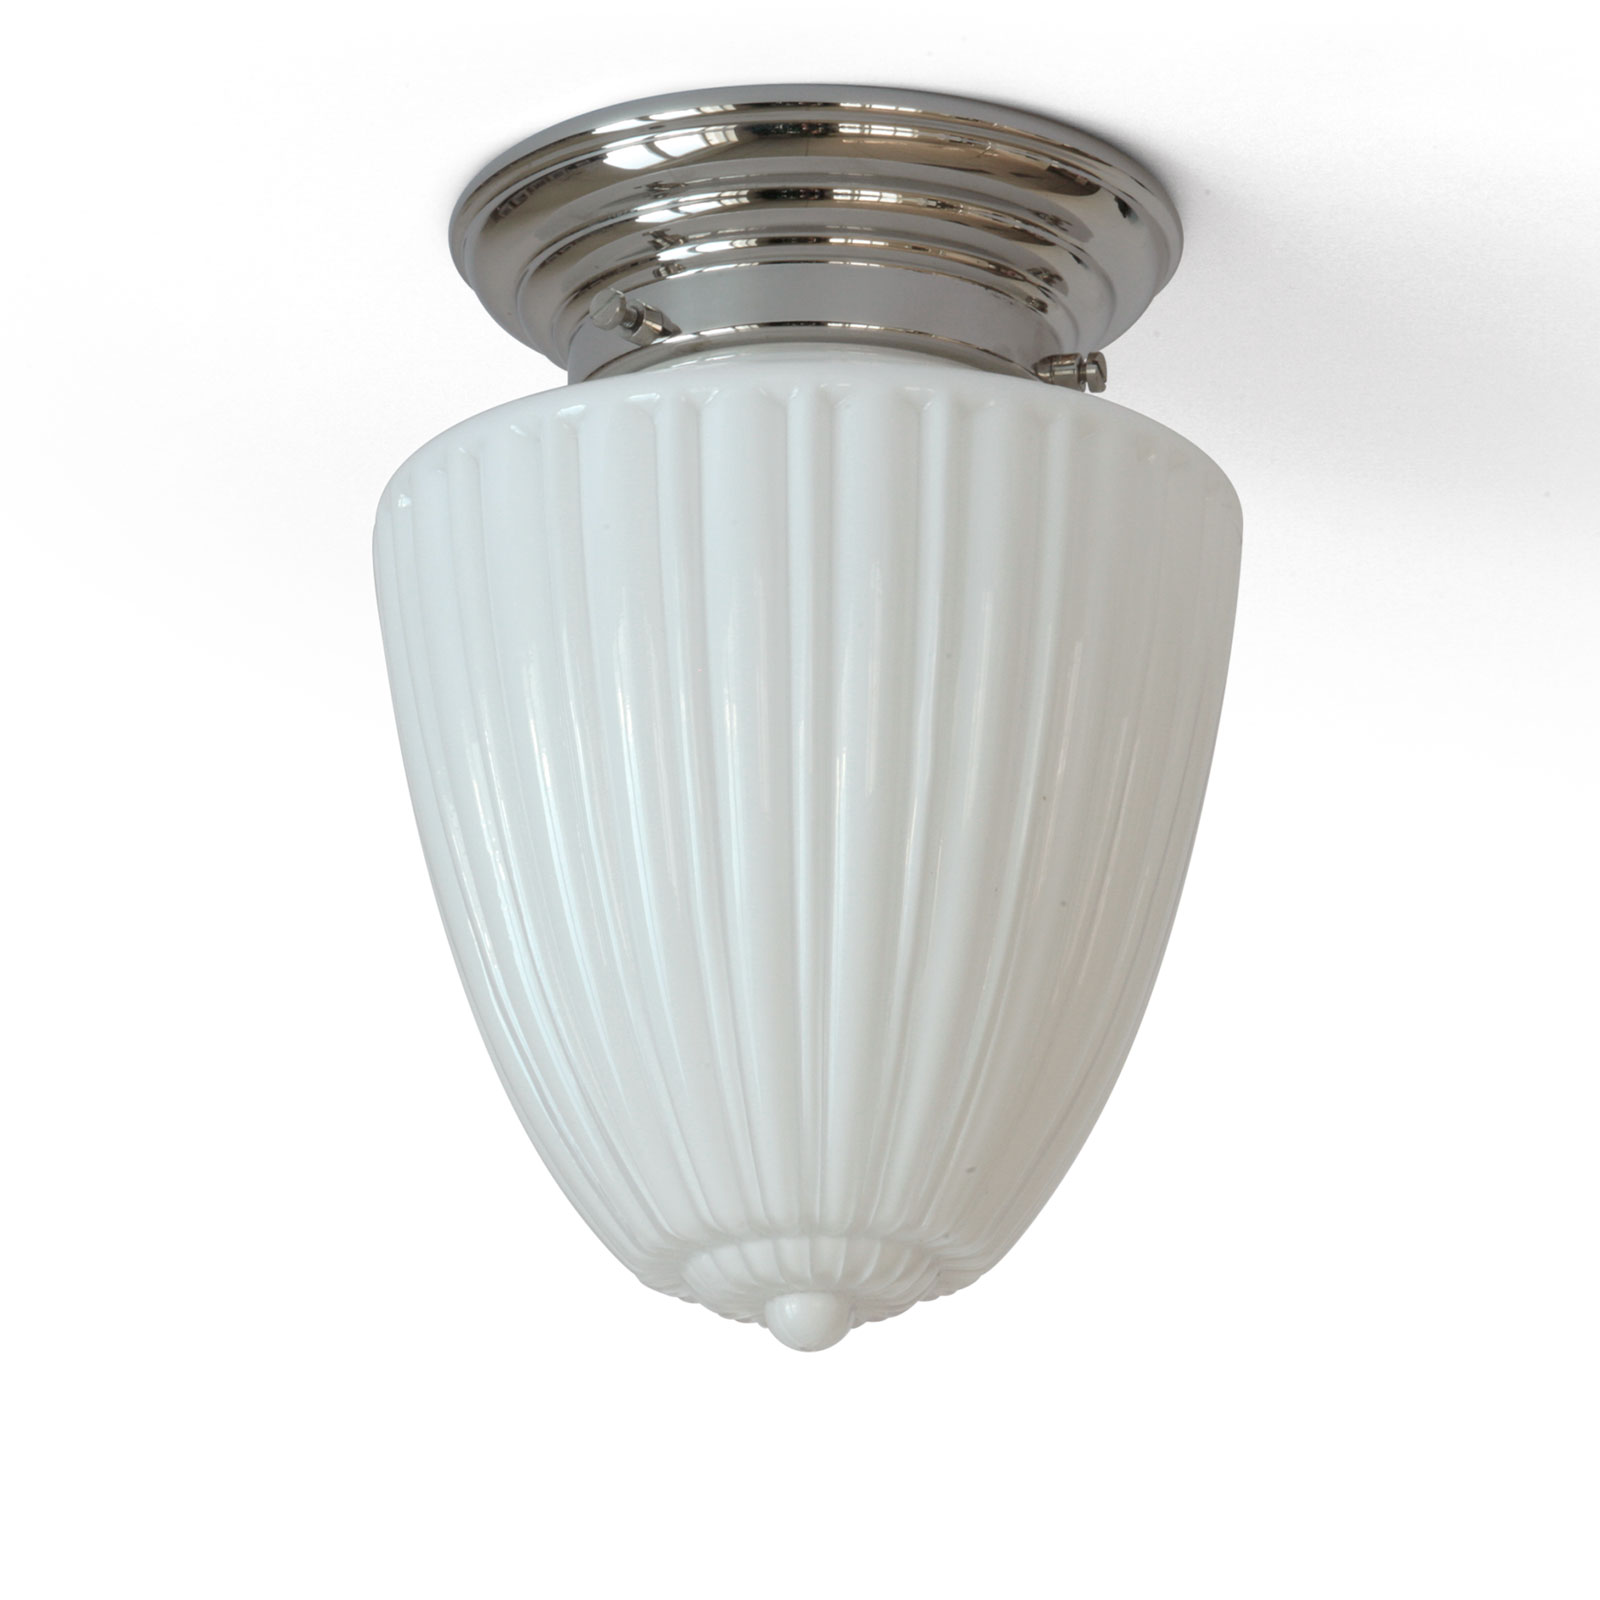 Klassische, kleinere Deckenleuchte mit kanneliertem Opalglas Ø 17 cm: Kleine Deckenlampe mit klassischem Jugendstil-Opalglasschirm, hier in Messing glänzend vernickelt